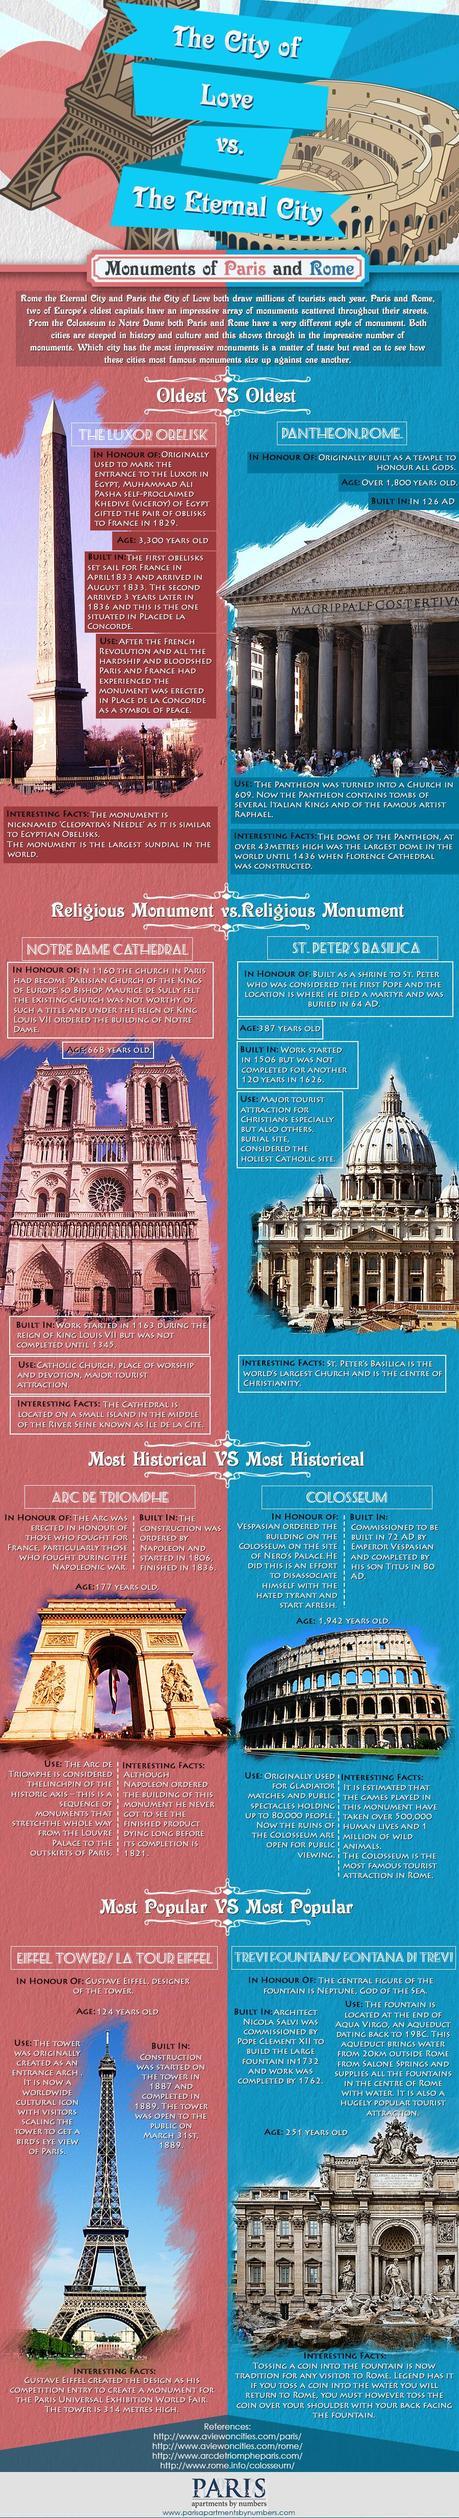 Rome vs. Paris!